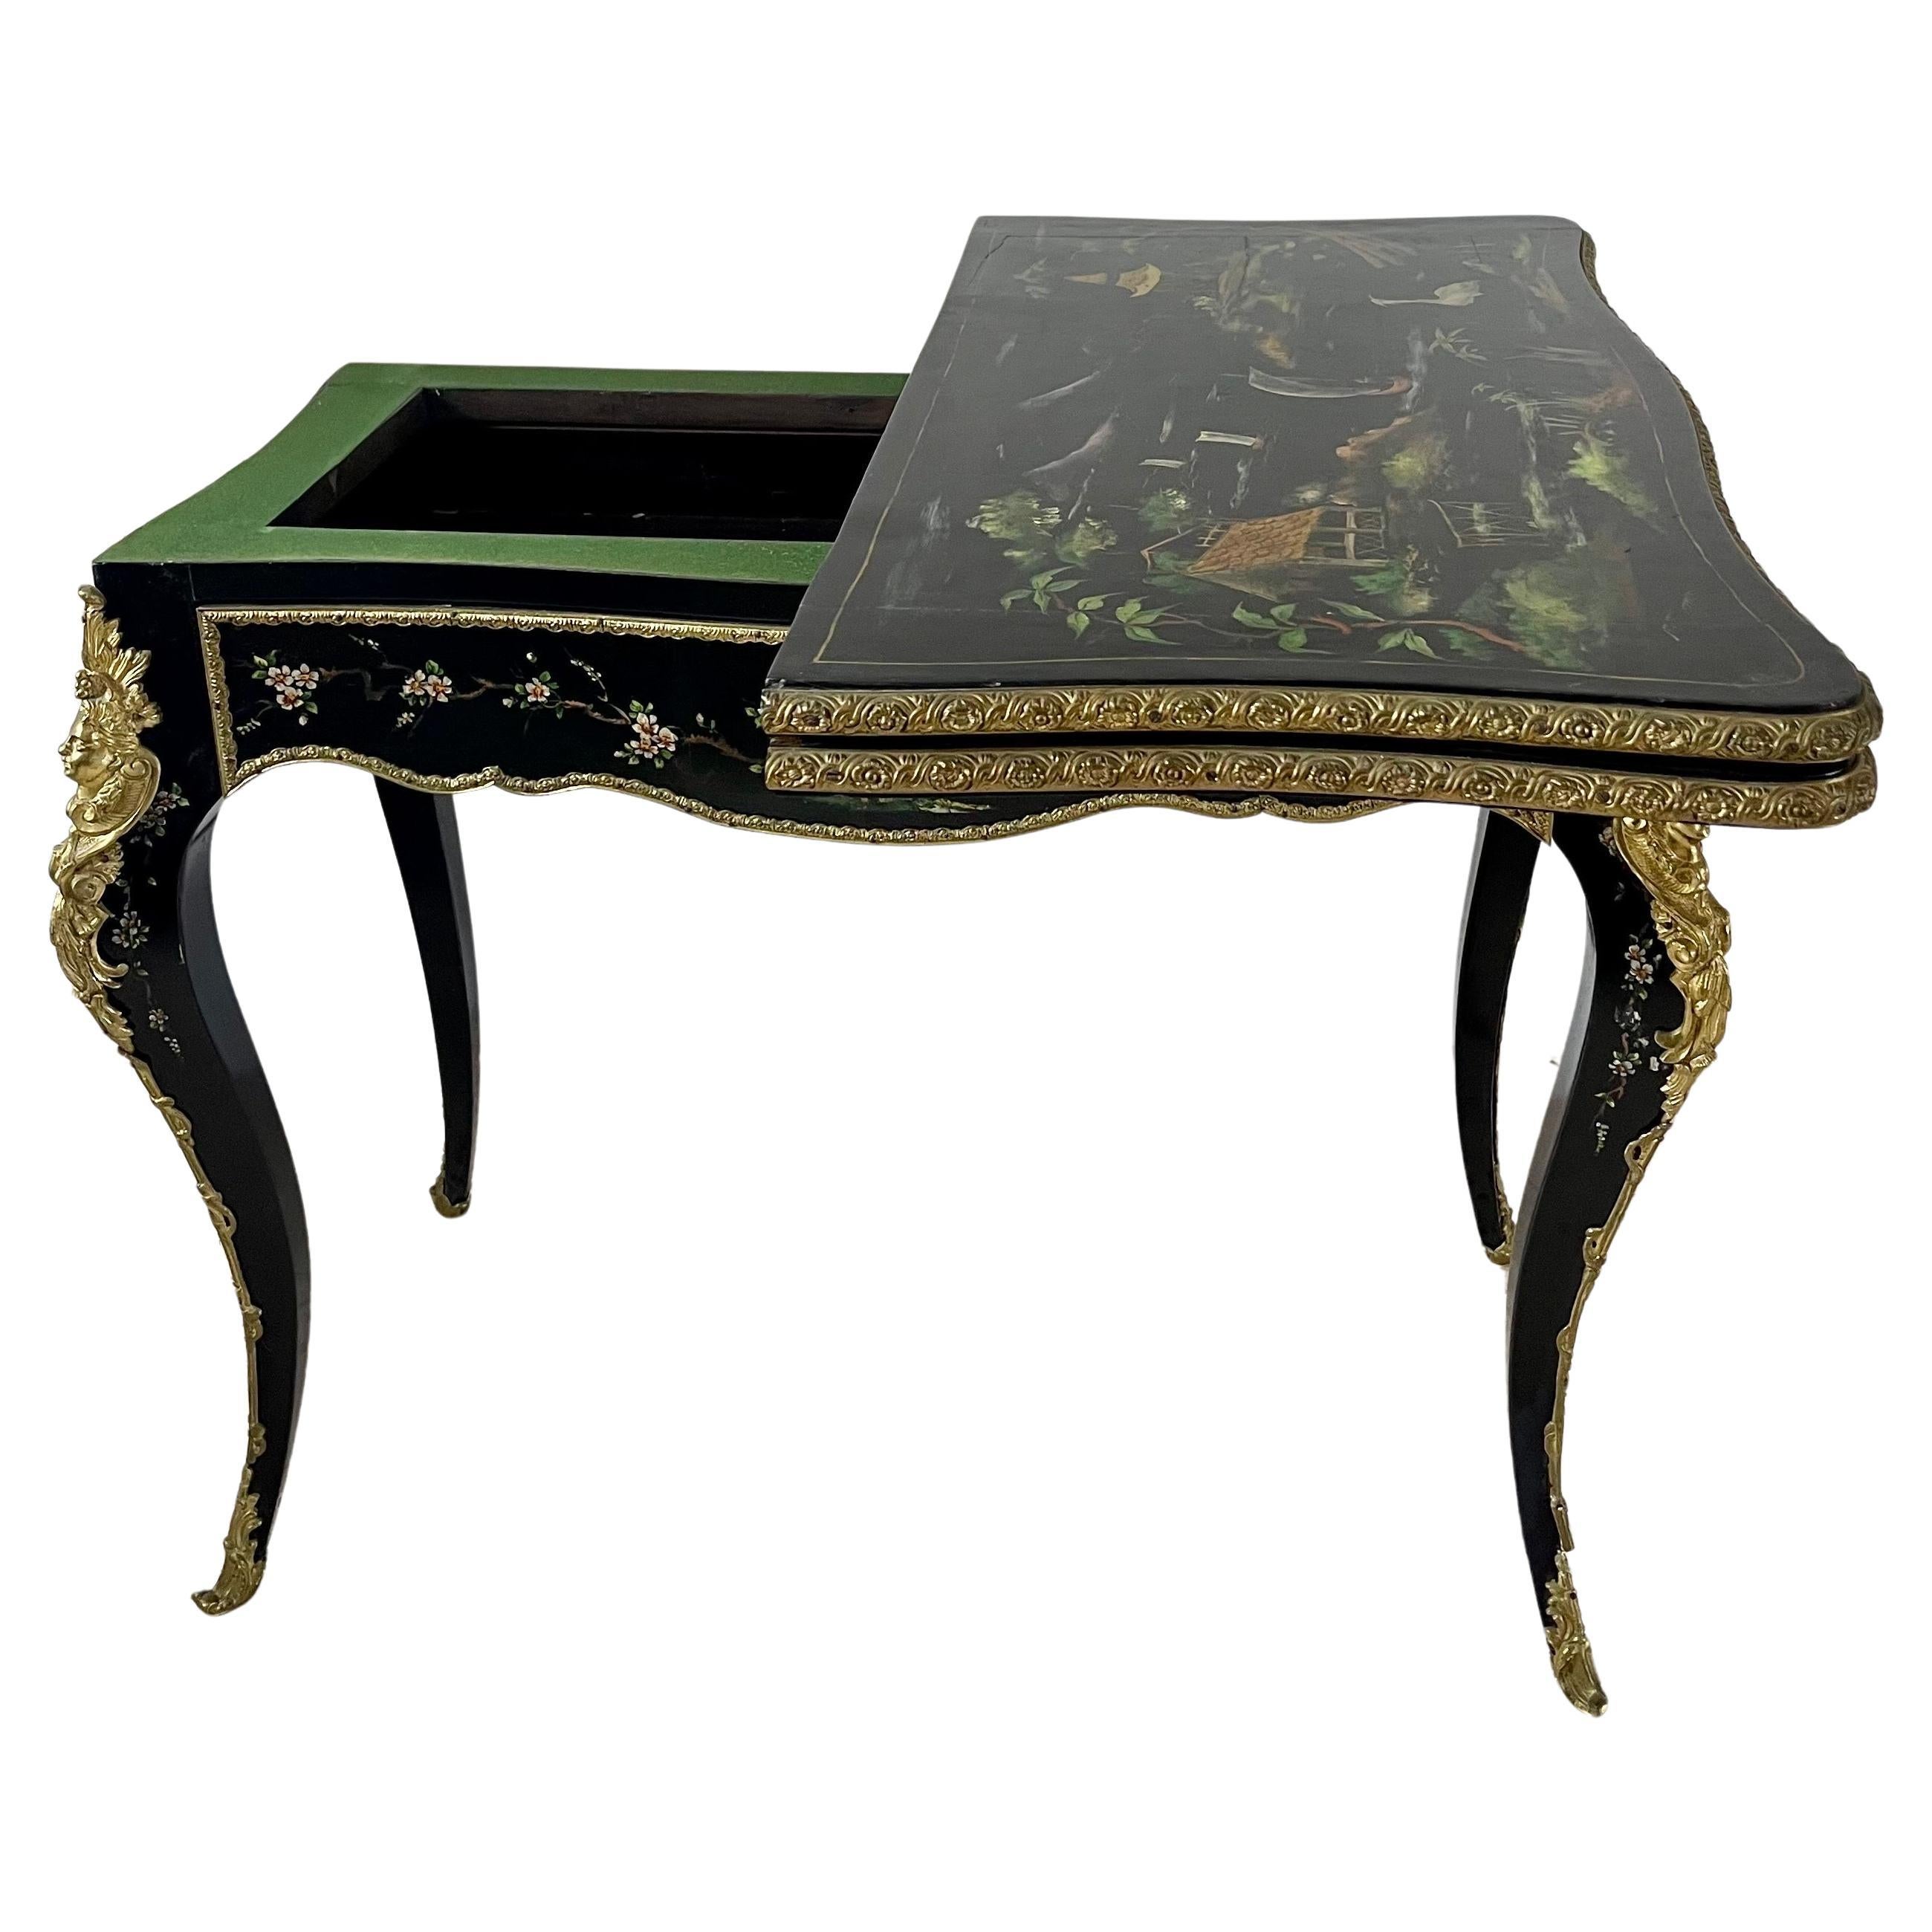 Console de table de jeu du 19e siècle, laquée noire et peinte de petites fleurs colorées.
Des ornements en bronze soulignent les bords de la table. Des personnages finement ciselés en bronze doré sont appliqués sur chaque pied cabriole.
Un tiroir à